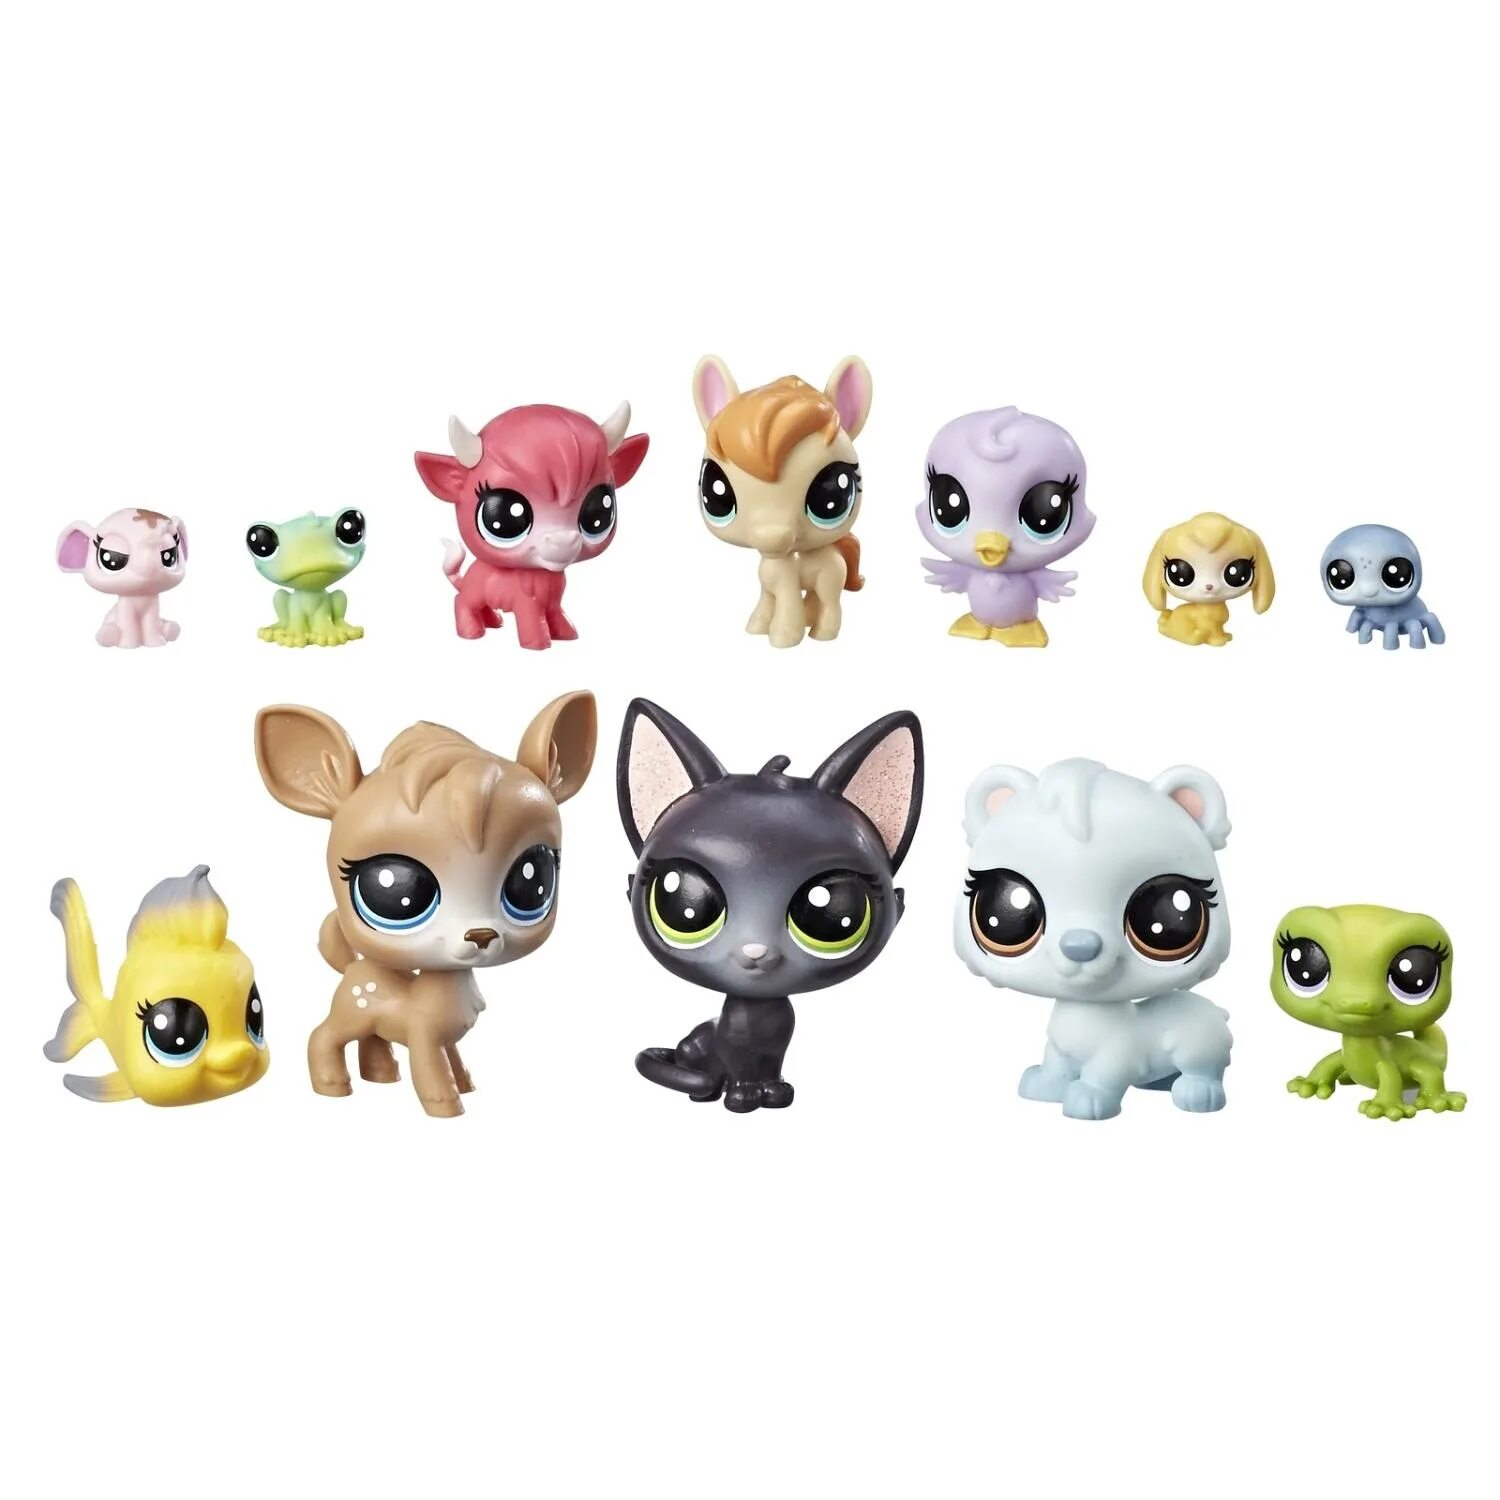 Купить игрушку pet. Игровой набор Hasbro Littlest Pet shop e3034. Littlest Pet shop 3011. Хасбро Littlest Pet shop. Литлест пет шоп новая коллекция.